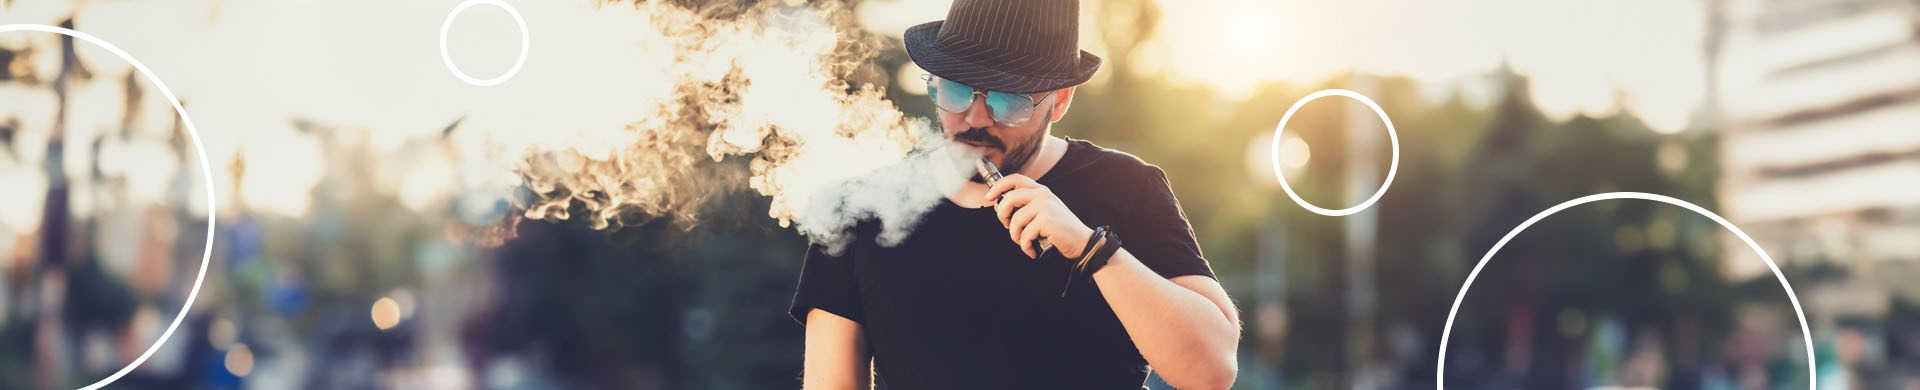 homem de chapéu fumando cigarro eletrônico e soltando o vapor.